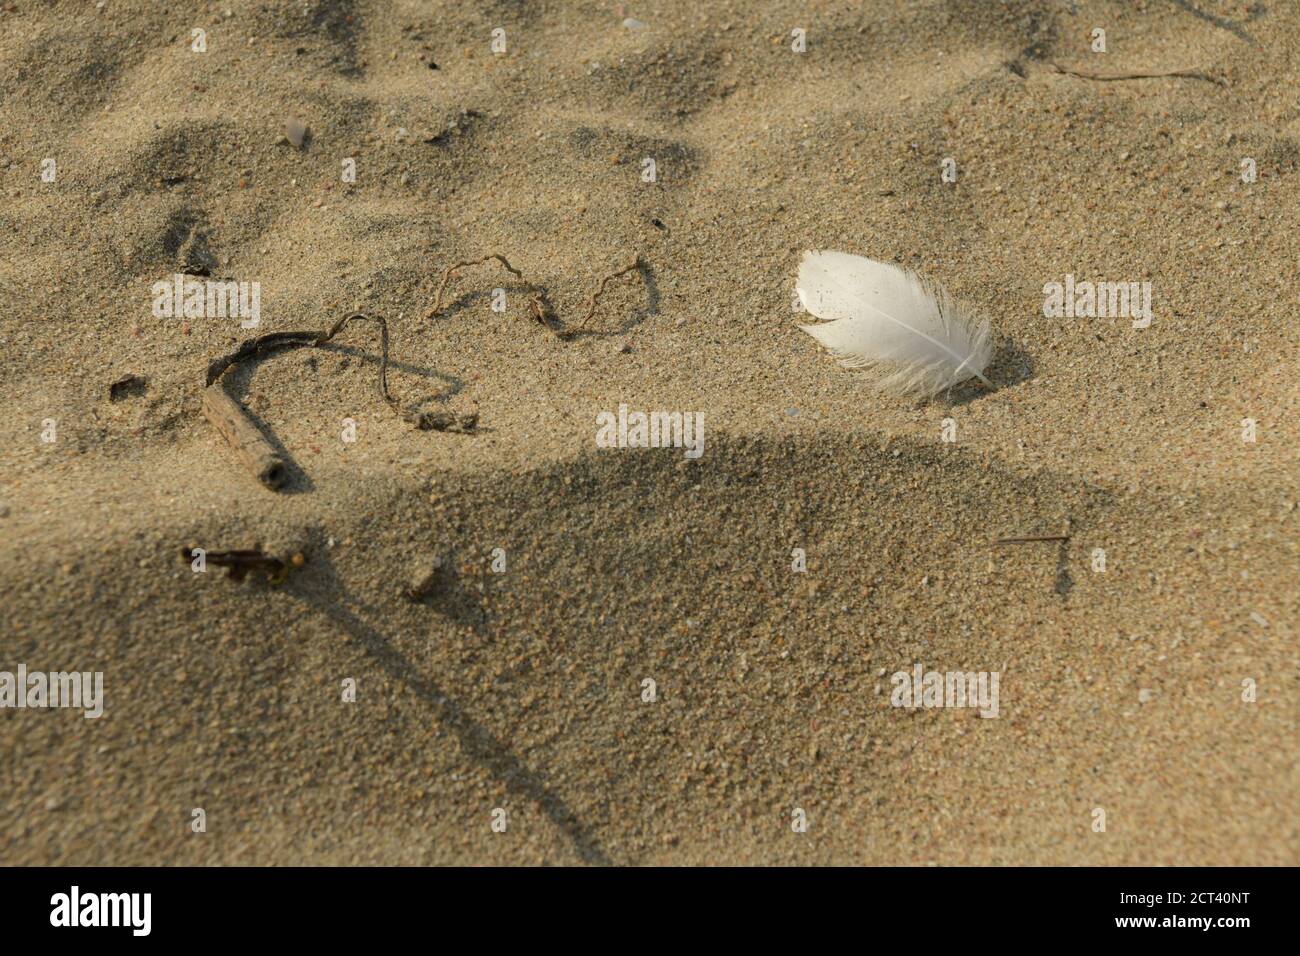 Plume d'oiseau blanc unique sur sable de plage, gros plan, détail, arrière-plans, vie encore, concepts, symbole, symbolisme, signe, signification, idée, artistique Banque D'Images